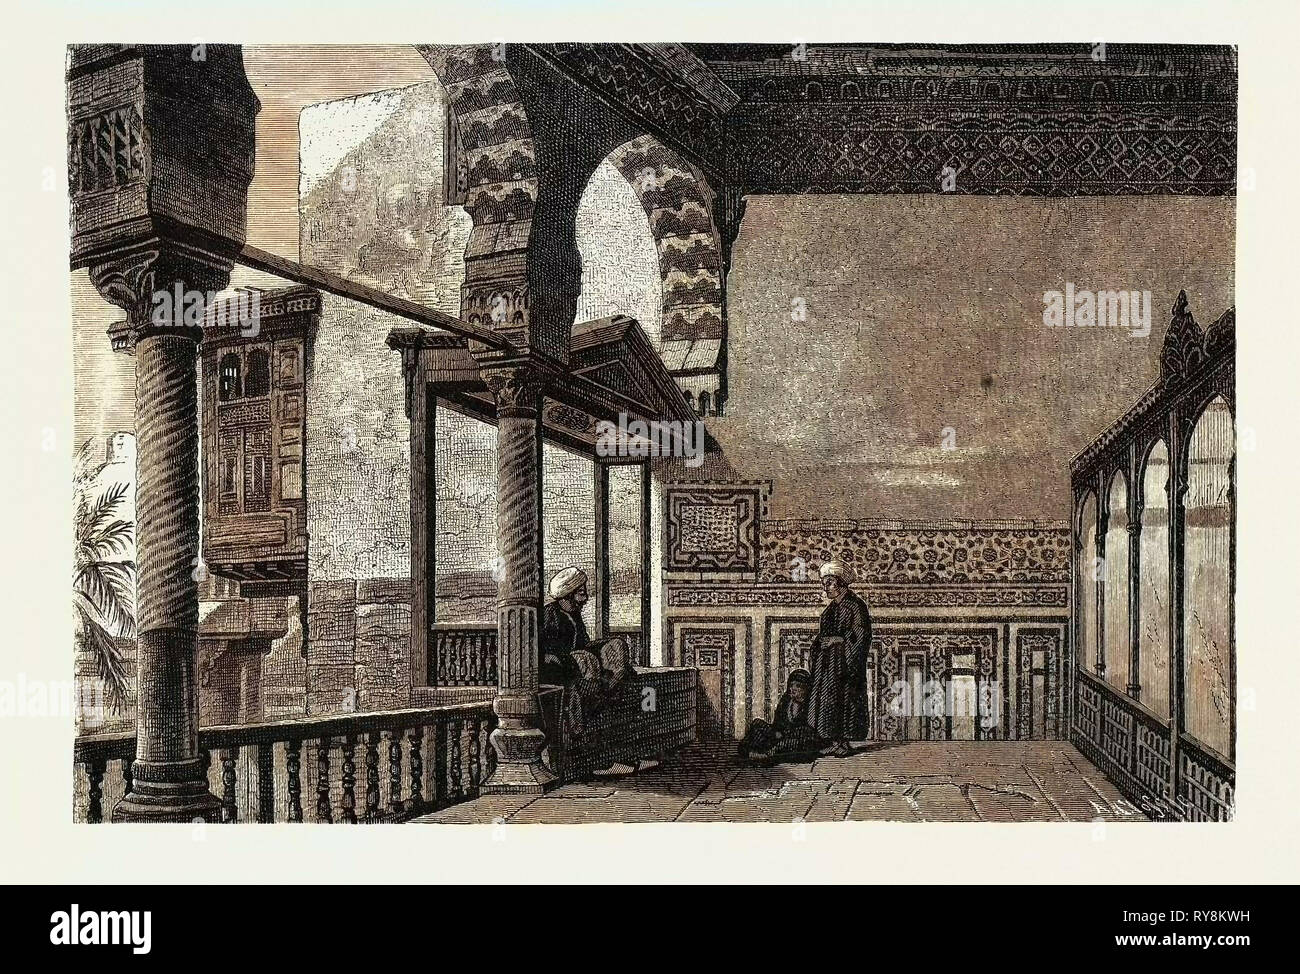 Salón abierto en un antiguo palacio mameluca en El Cairo. Egipto, grabado 1879 Foto de stock